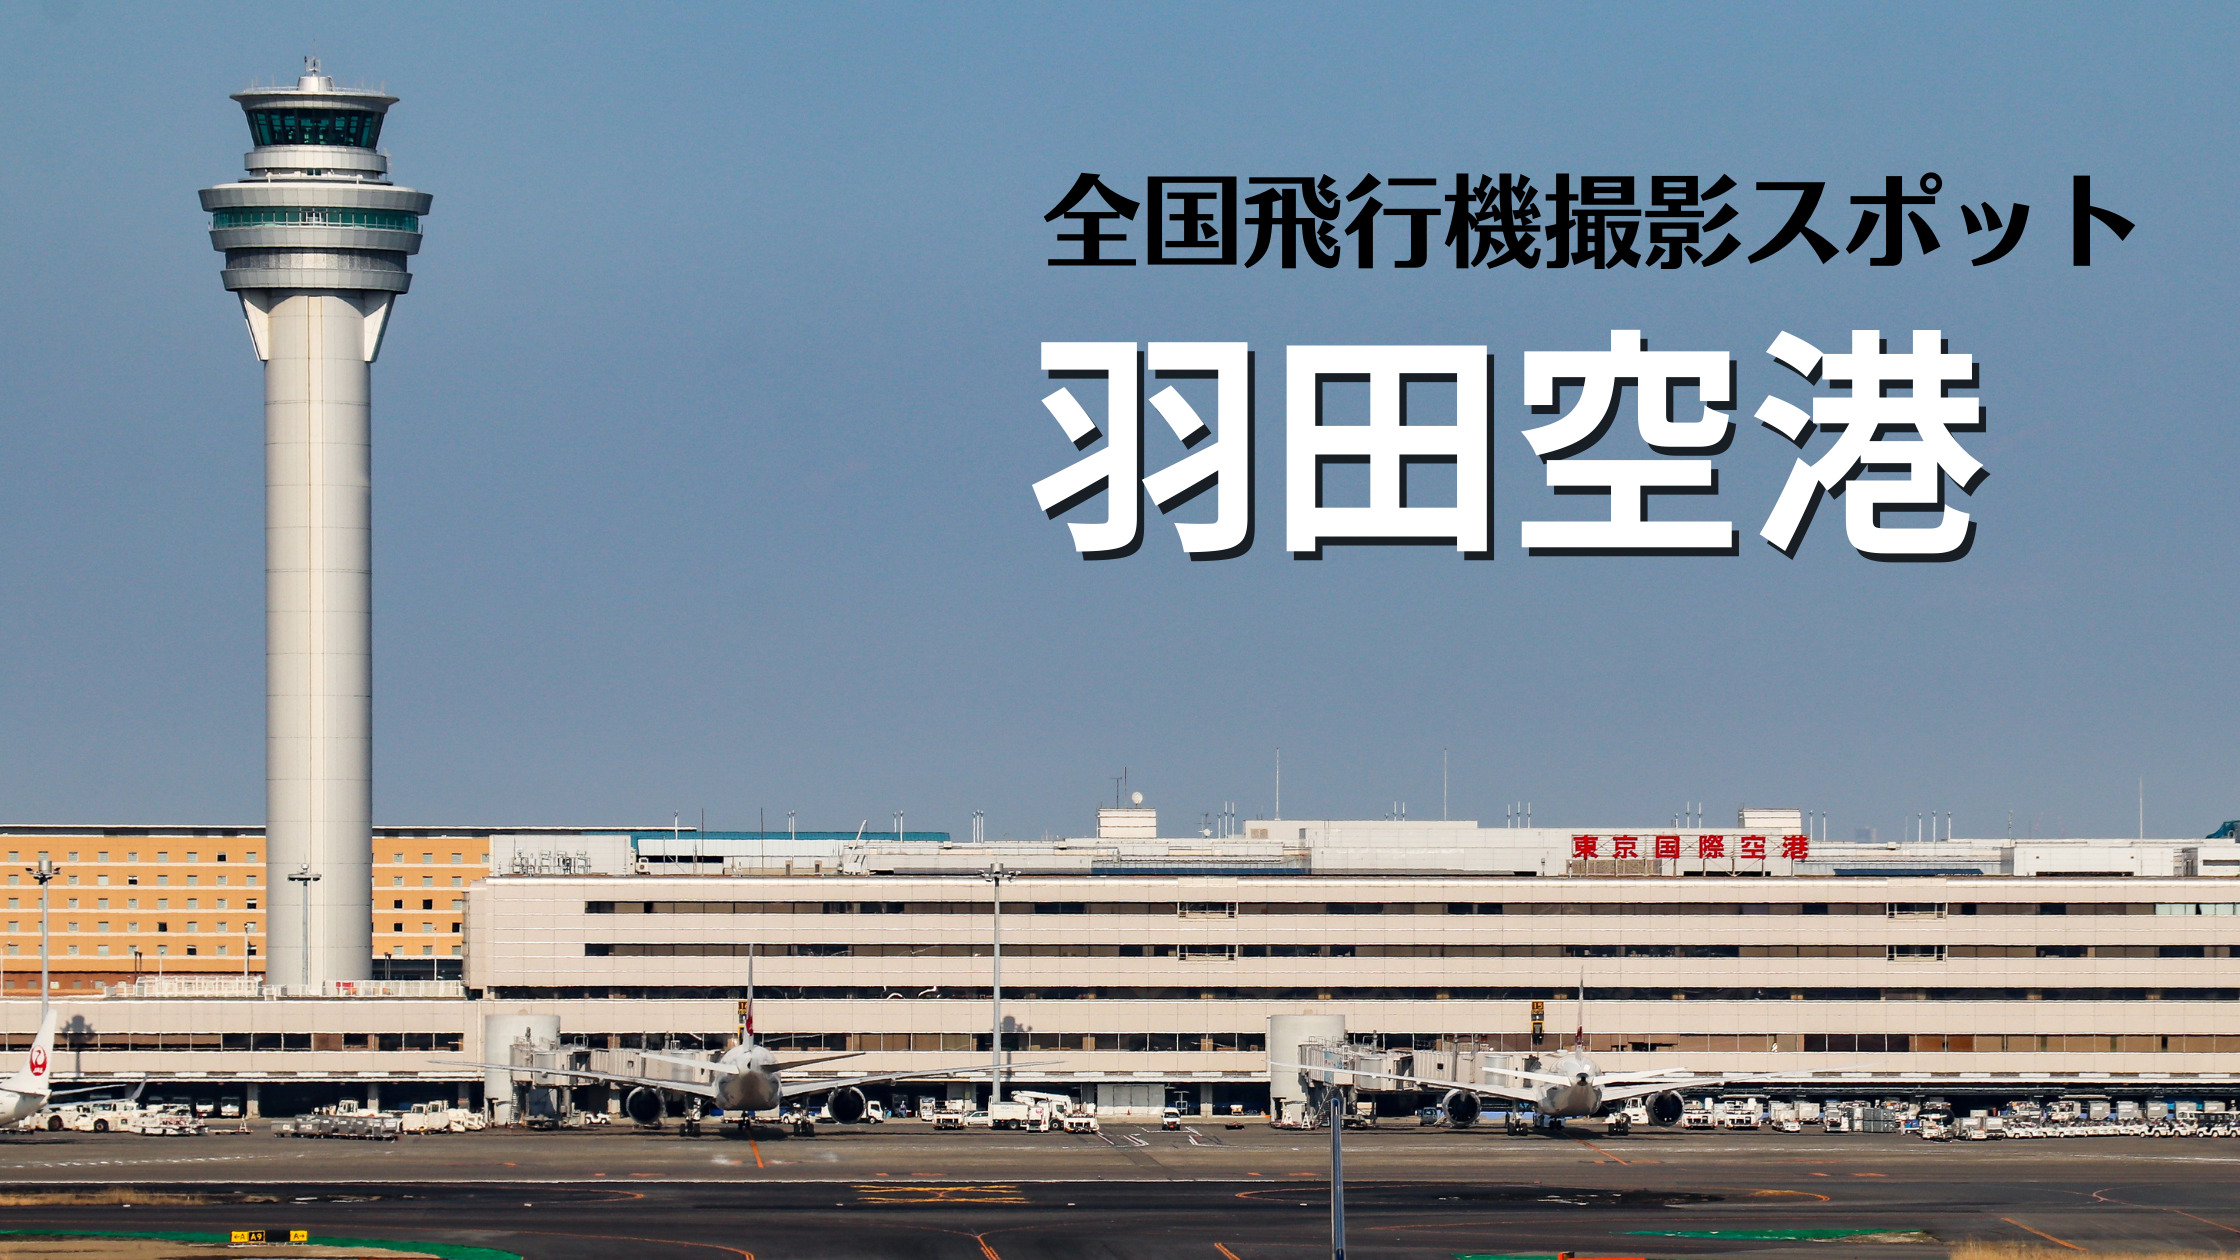 関東 東京国際空港 羽田空港 Hnd Rjtt 飛行機写真撮影スポット情報 シテイリョウコウ